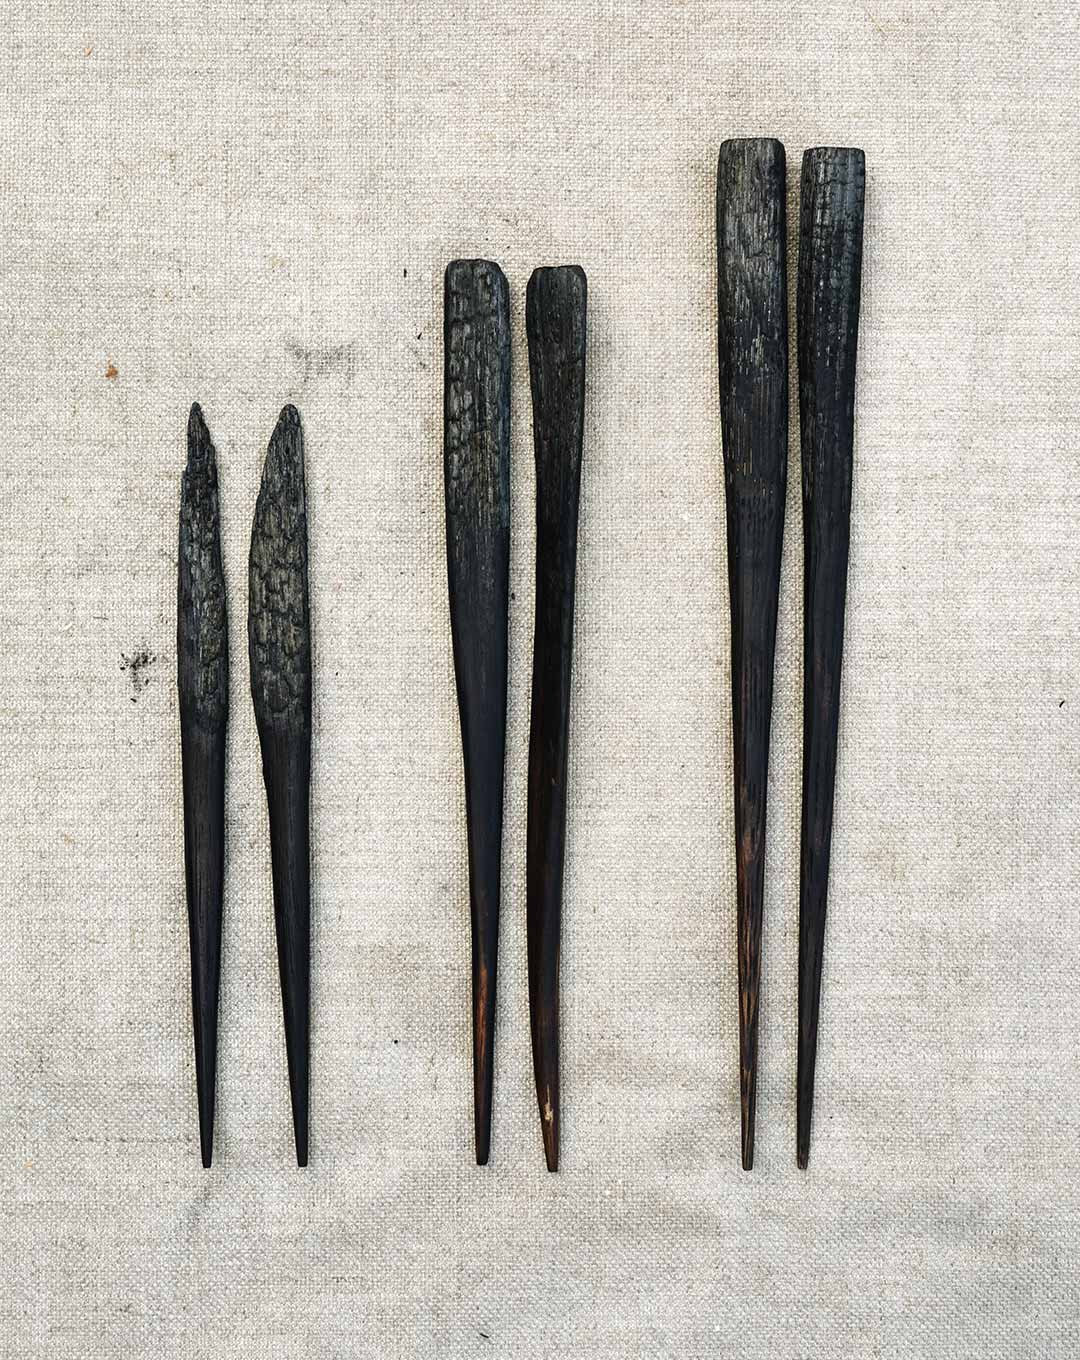 Burnt wood chopsticks by Lukas Cober